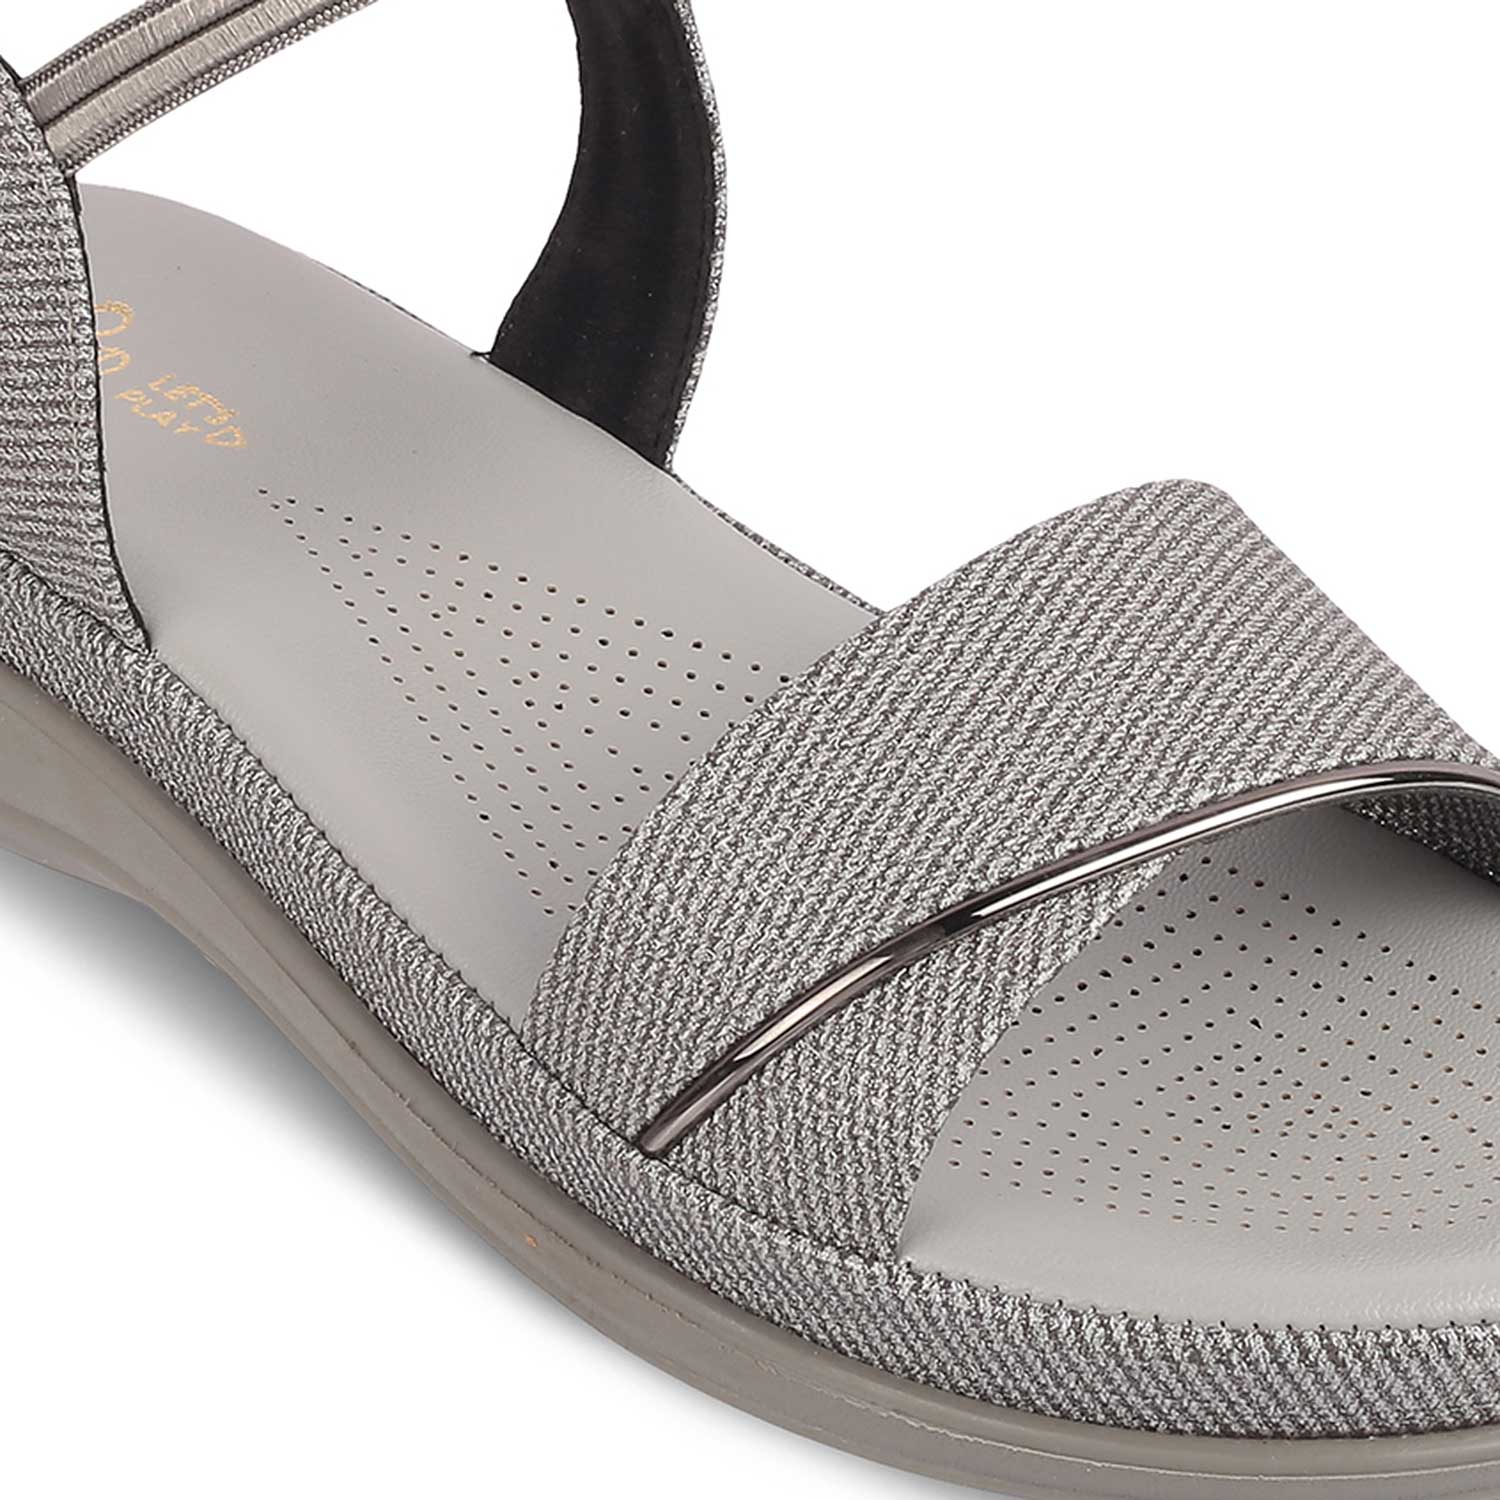 The Linz Grey Women's Casual Wedge Sandals Tresmode - Tresmode